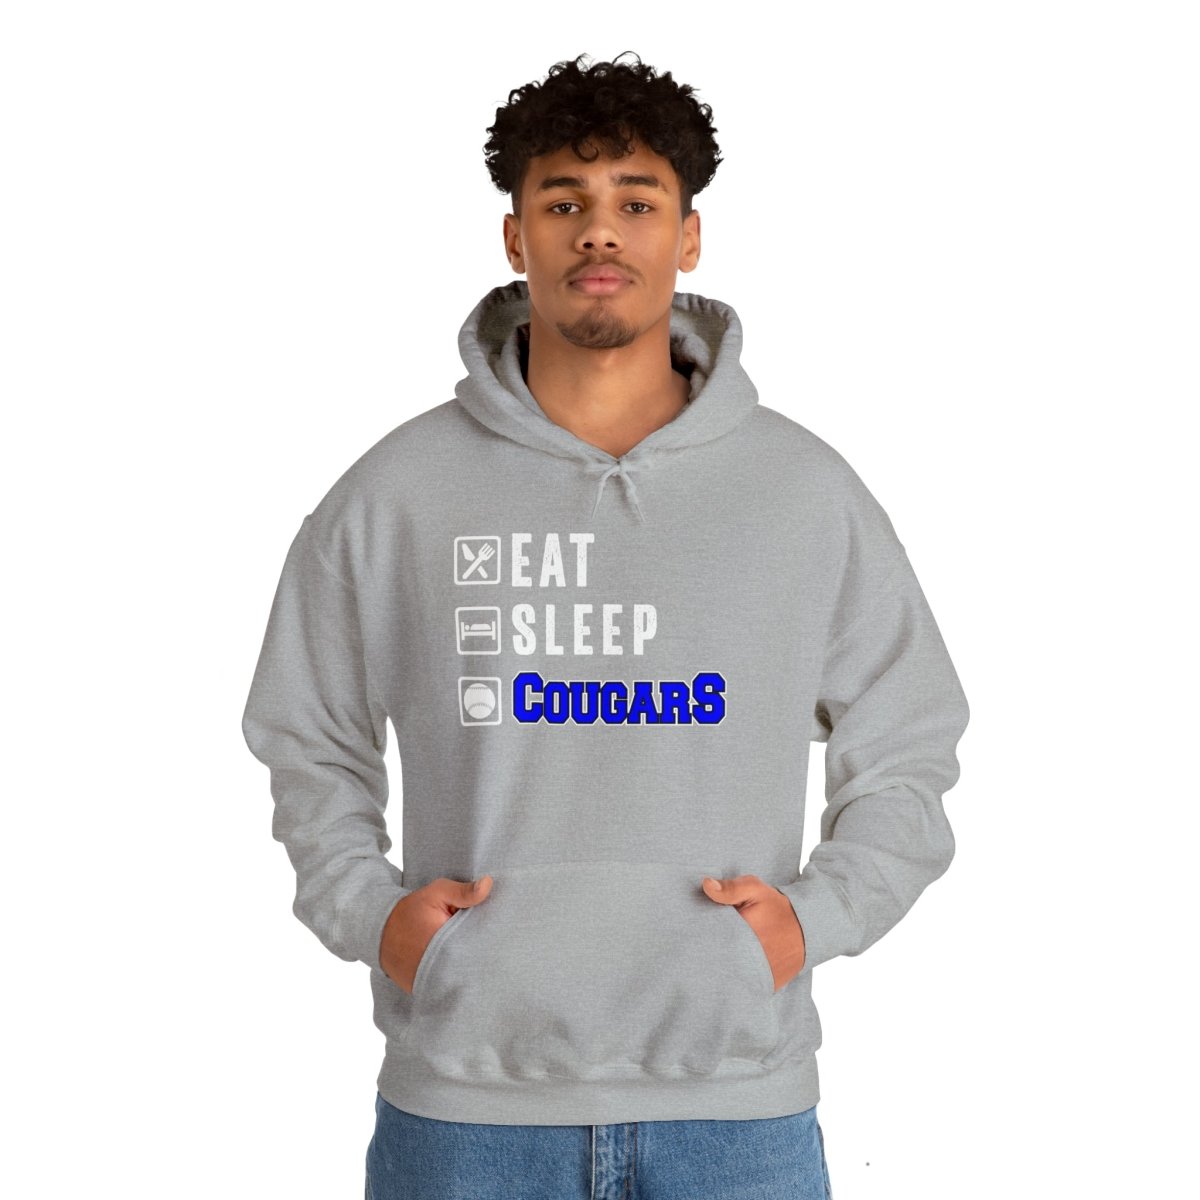 Eat Sleep Cougars Hooded Sweatshirt